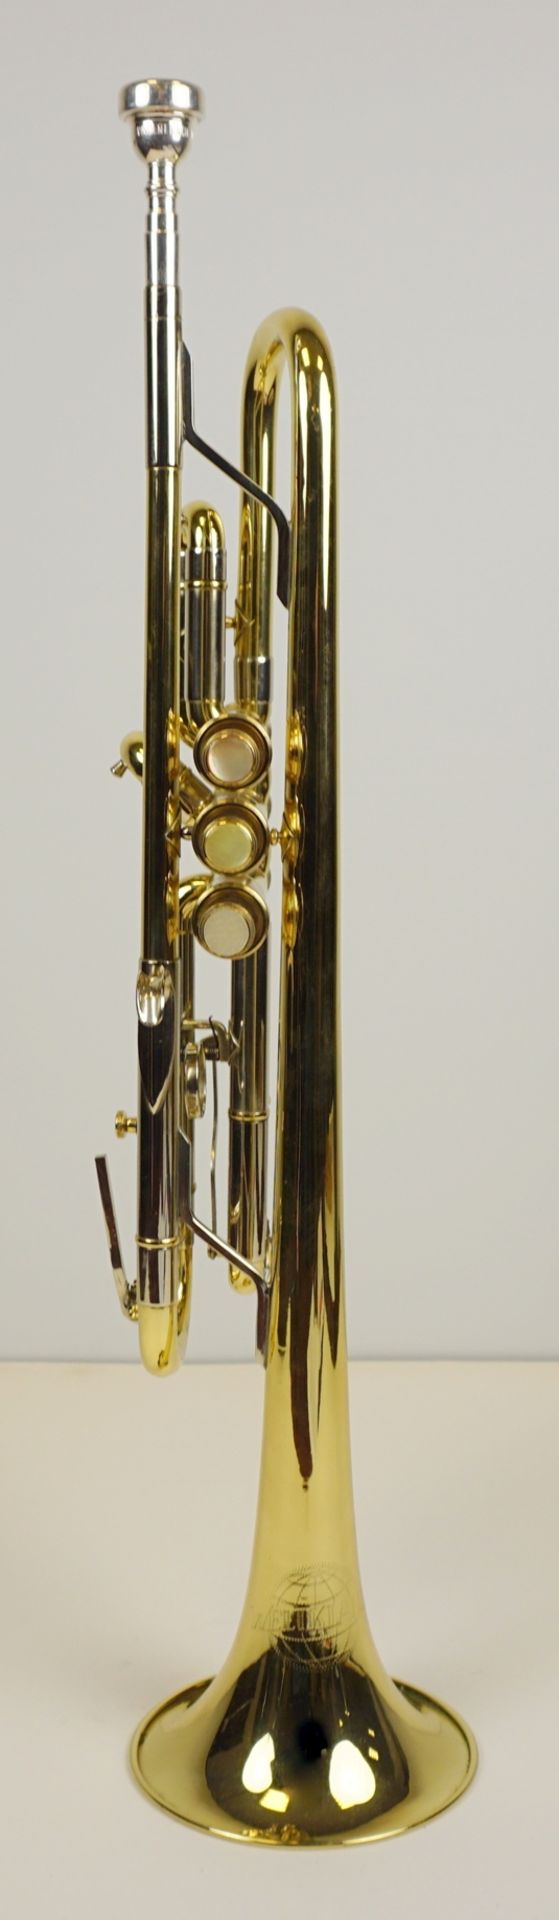 Trompete, Weltklang, Messing, Länge ca. 55cm - Bild 2 aus 5